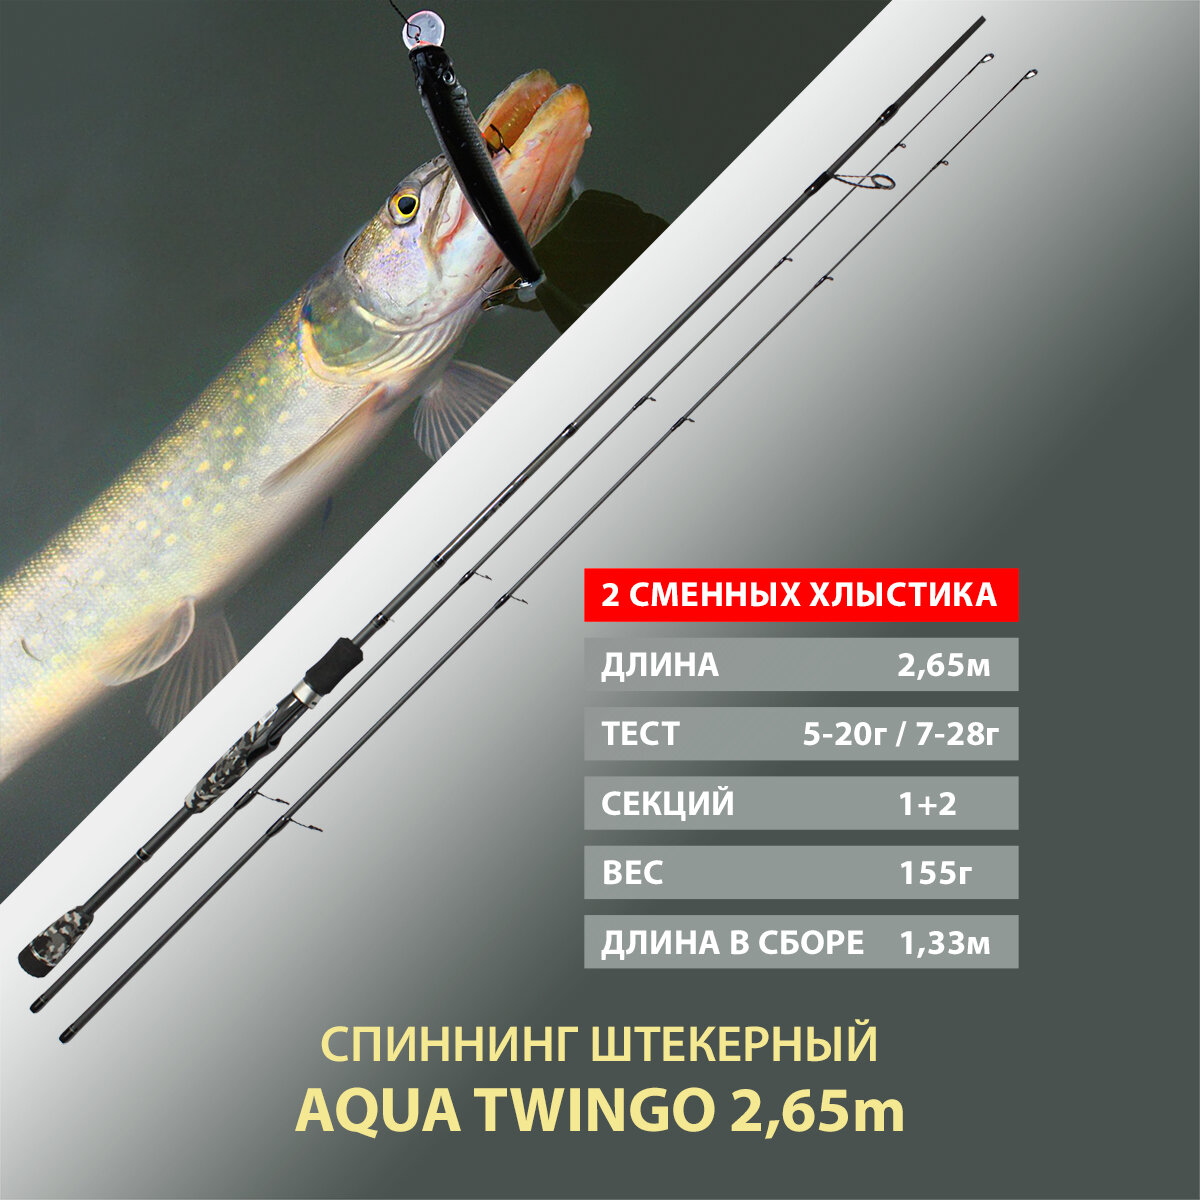 Спиннинг штекерный, с двумя хлыстами AQUA Twingo 2.65m, тест 05-20g/07-28g